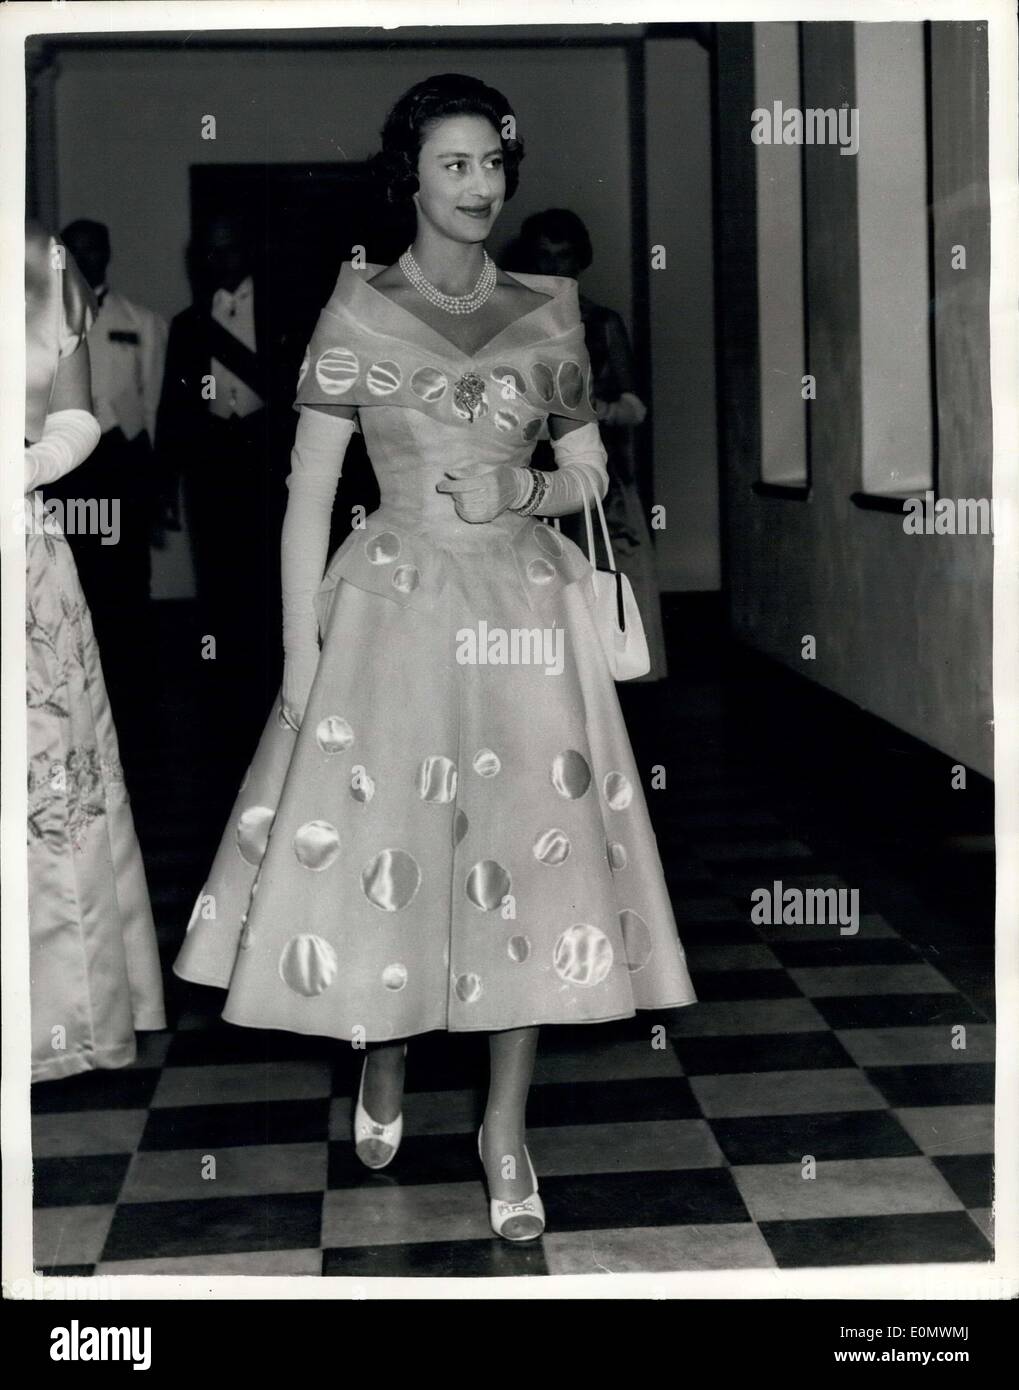 Sep 26, 1956 - hat Prinzessin Margaret setzen eine neue Mode - Foto  zeigt:-das ist das Kleid, das eine Mode-Mensation in Mombama erstellt.  Prinzessin Margaret trug es für eine Regierung Haus-Rezeption. Jetzt